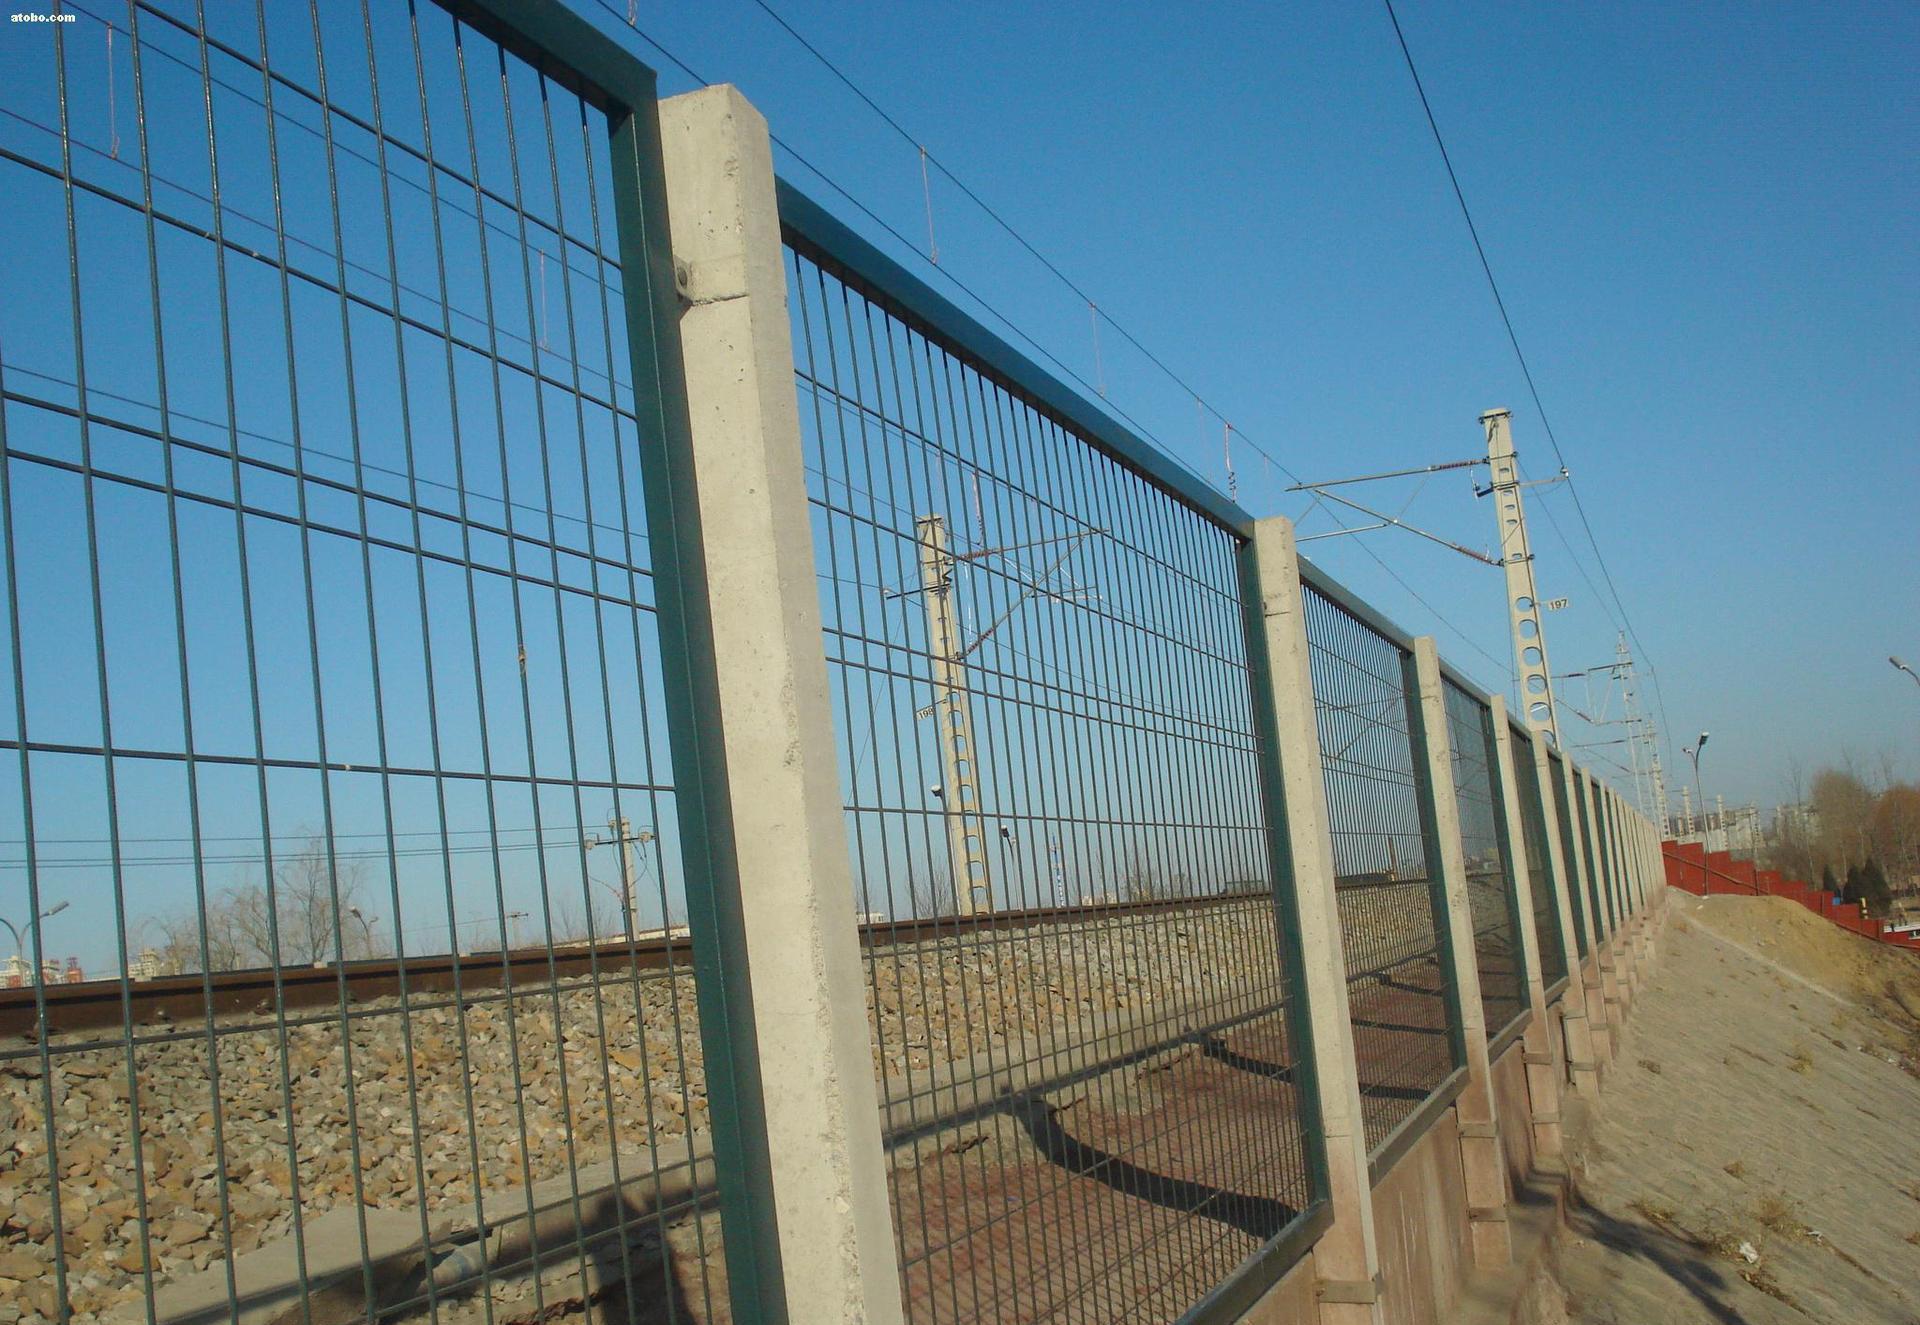 上海市政围拦网上海工厂隔离栅上海铁路护栏网上海监狱围栏网图片